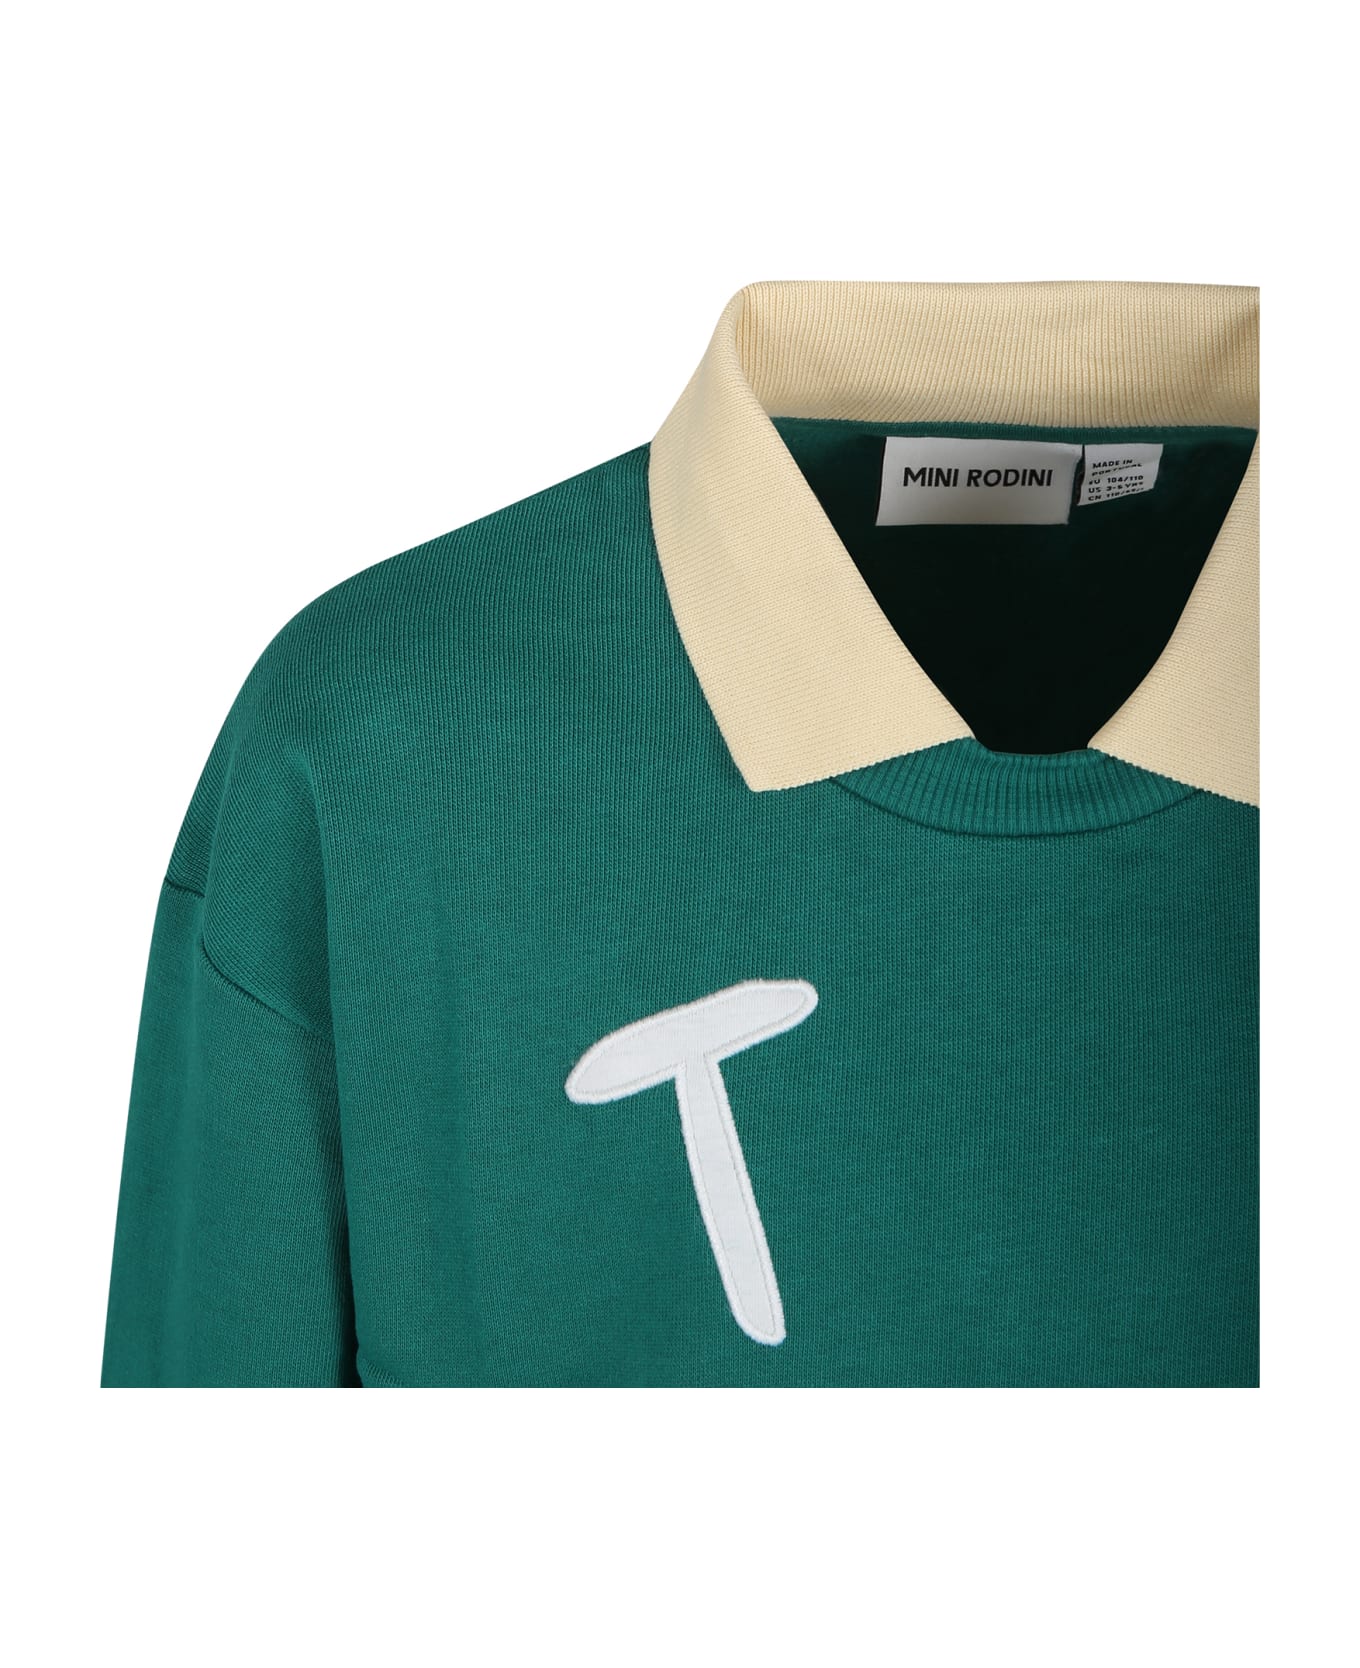 Mini Rodini Green Sweatshirt For Kids With Writing - Green